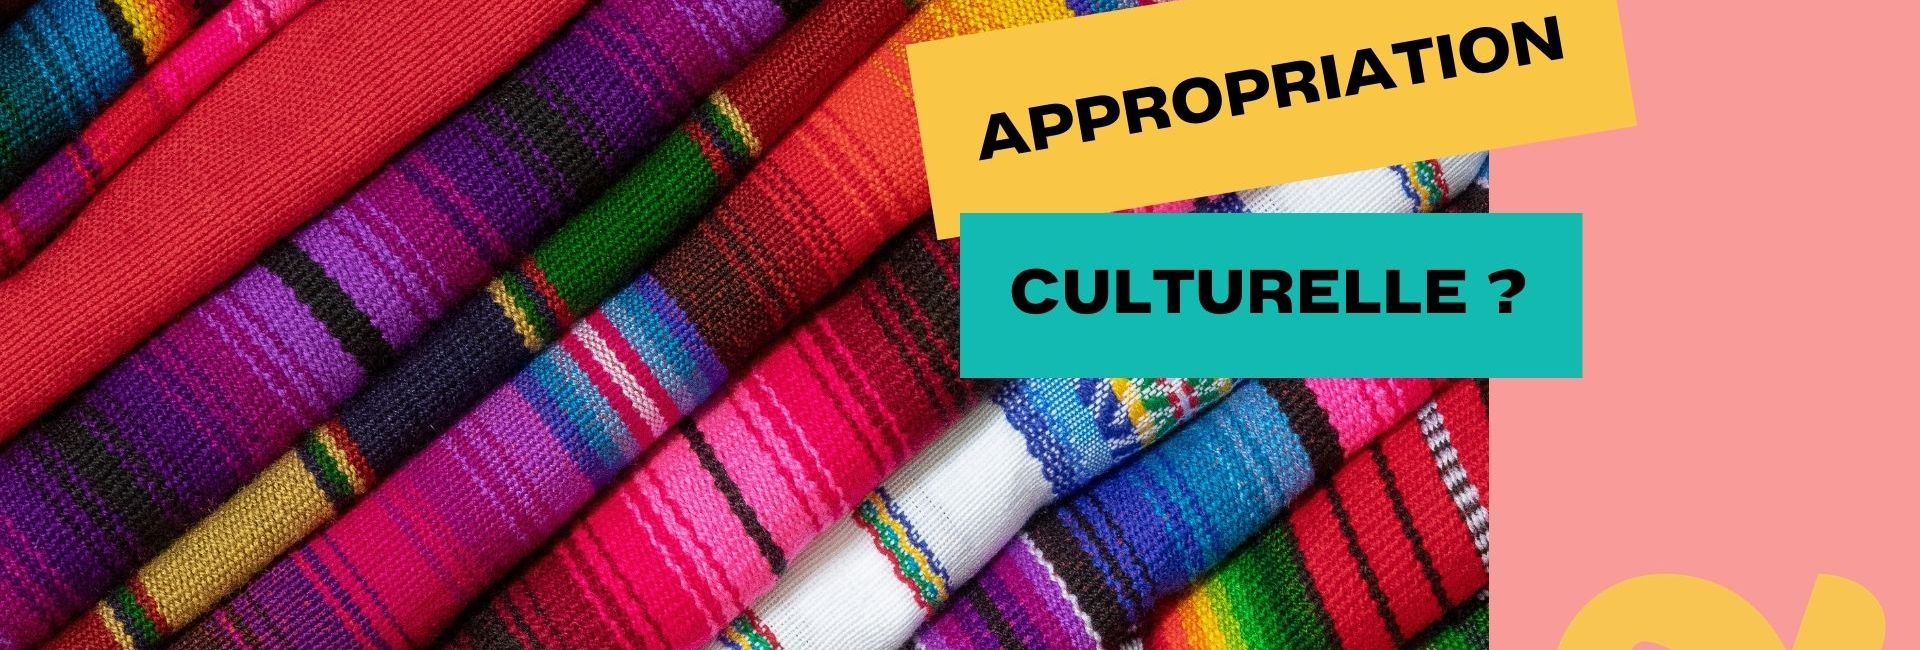 Le Mexique demande des comptes à Zara concernant l’appropriation culturelle